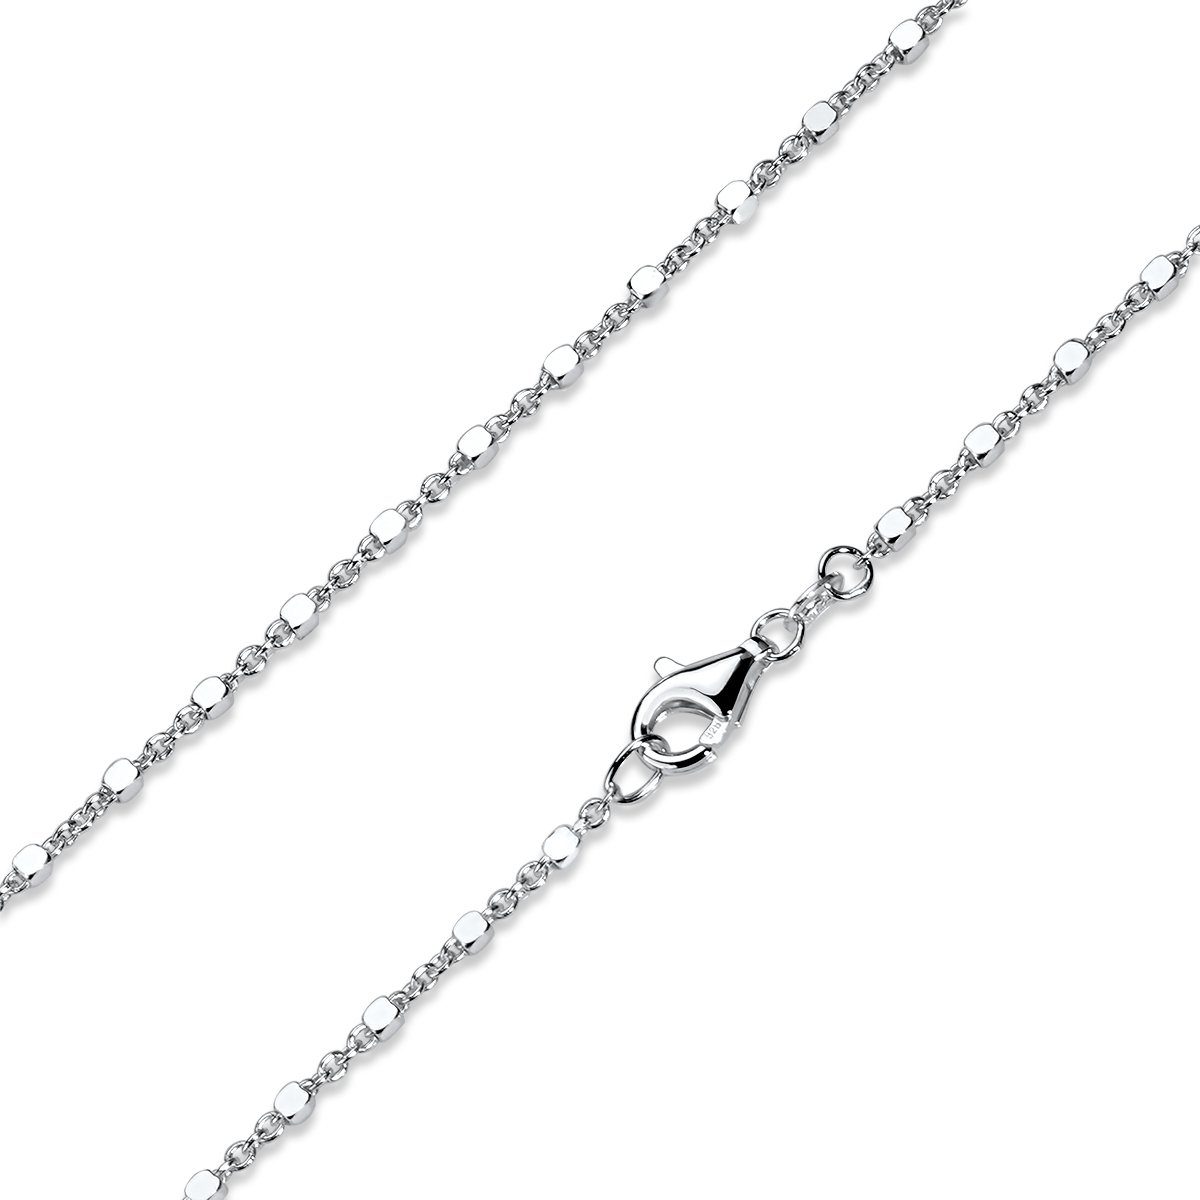 Materia Gliederkette Damen Silber Würfelkette modern K107, 925 Sterling Silber